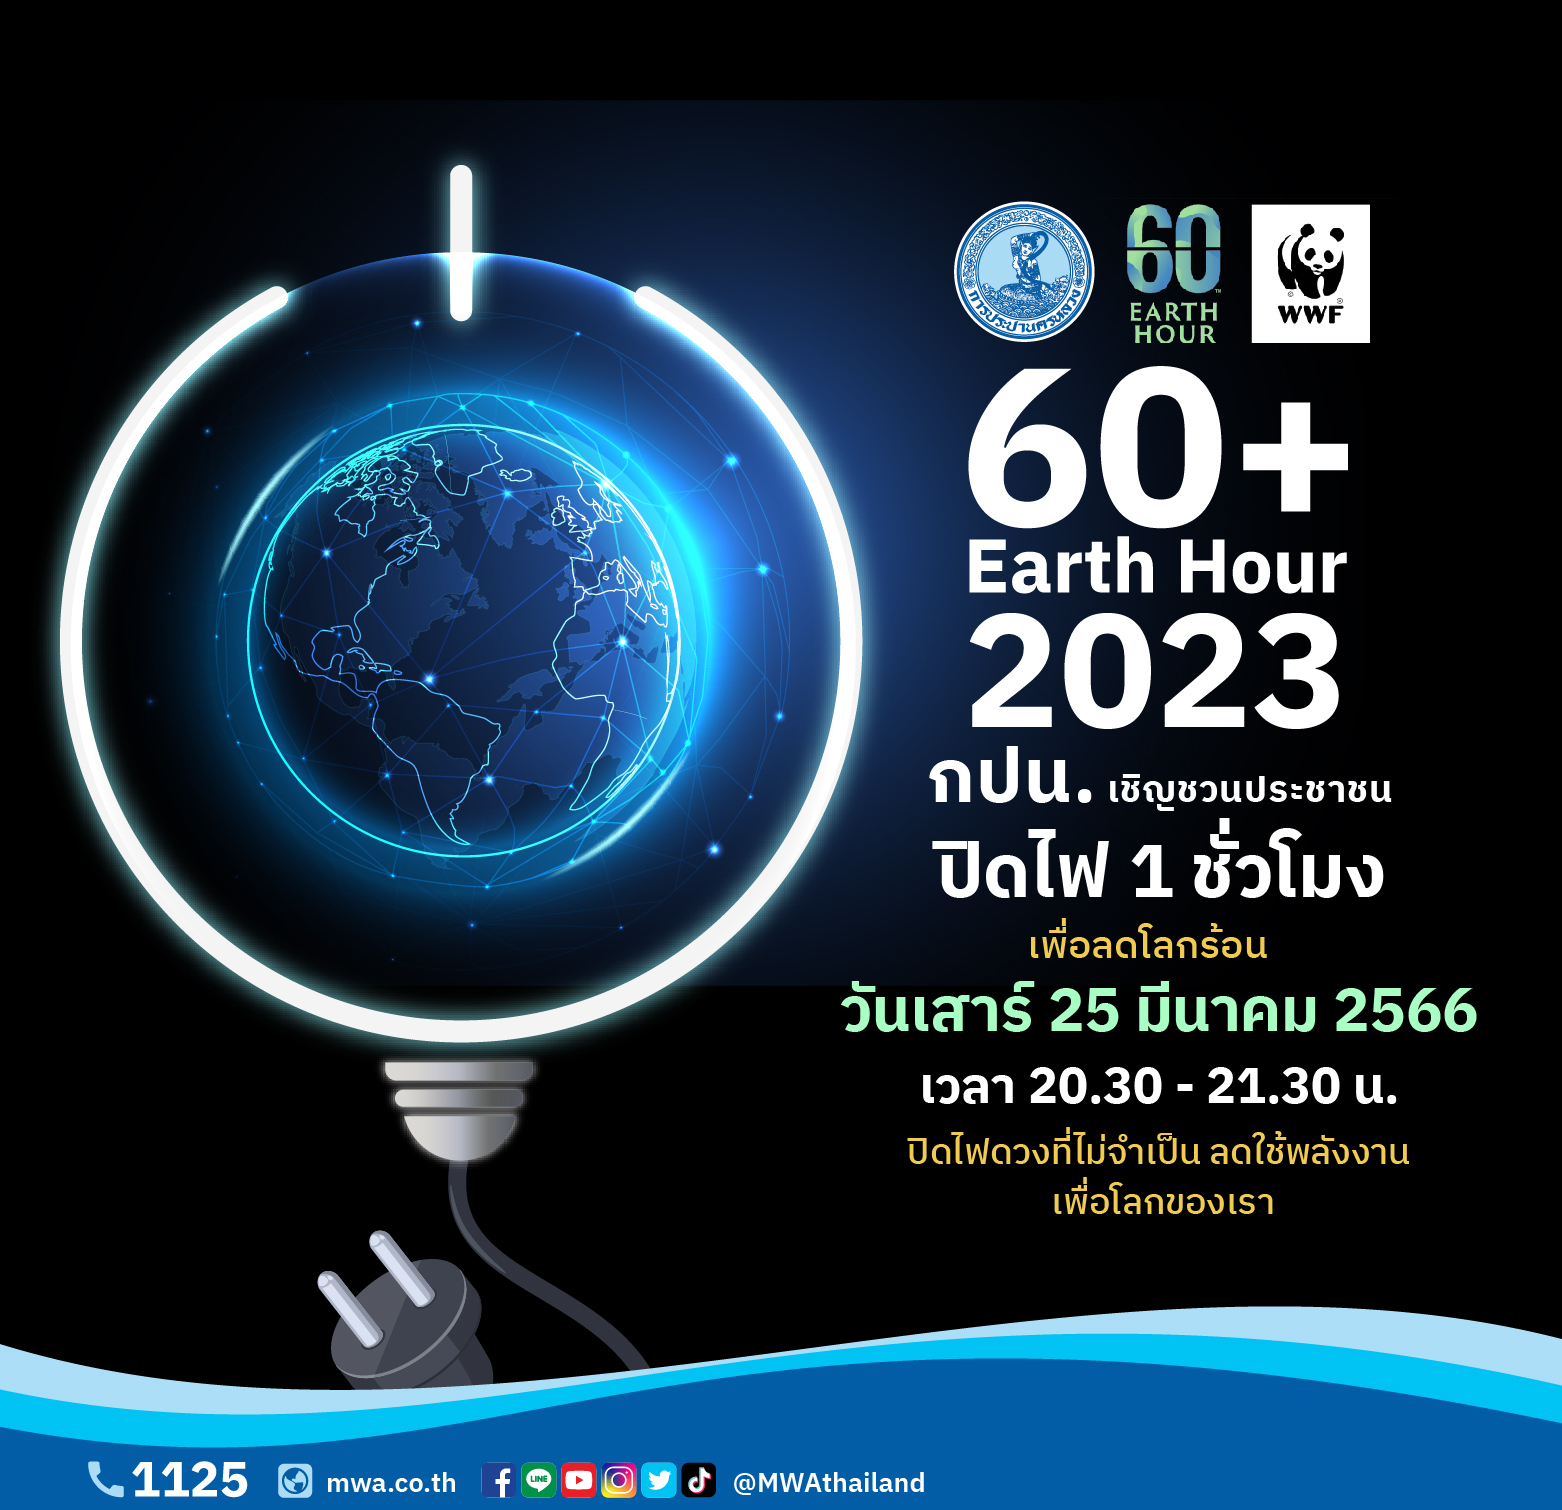 “ปิดไฟ 1 ชั่วโมง เพื่อลดโลกร้อน” (60+ Earth Hour 2023) ในวันเสาร์ที่ 25 มีนาคม 2566 ตั้งแต่เวลา 20.30 น. – 21.30 น.